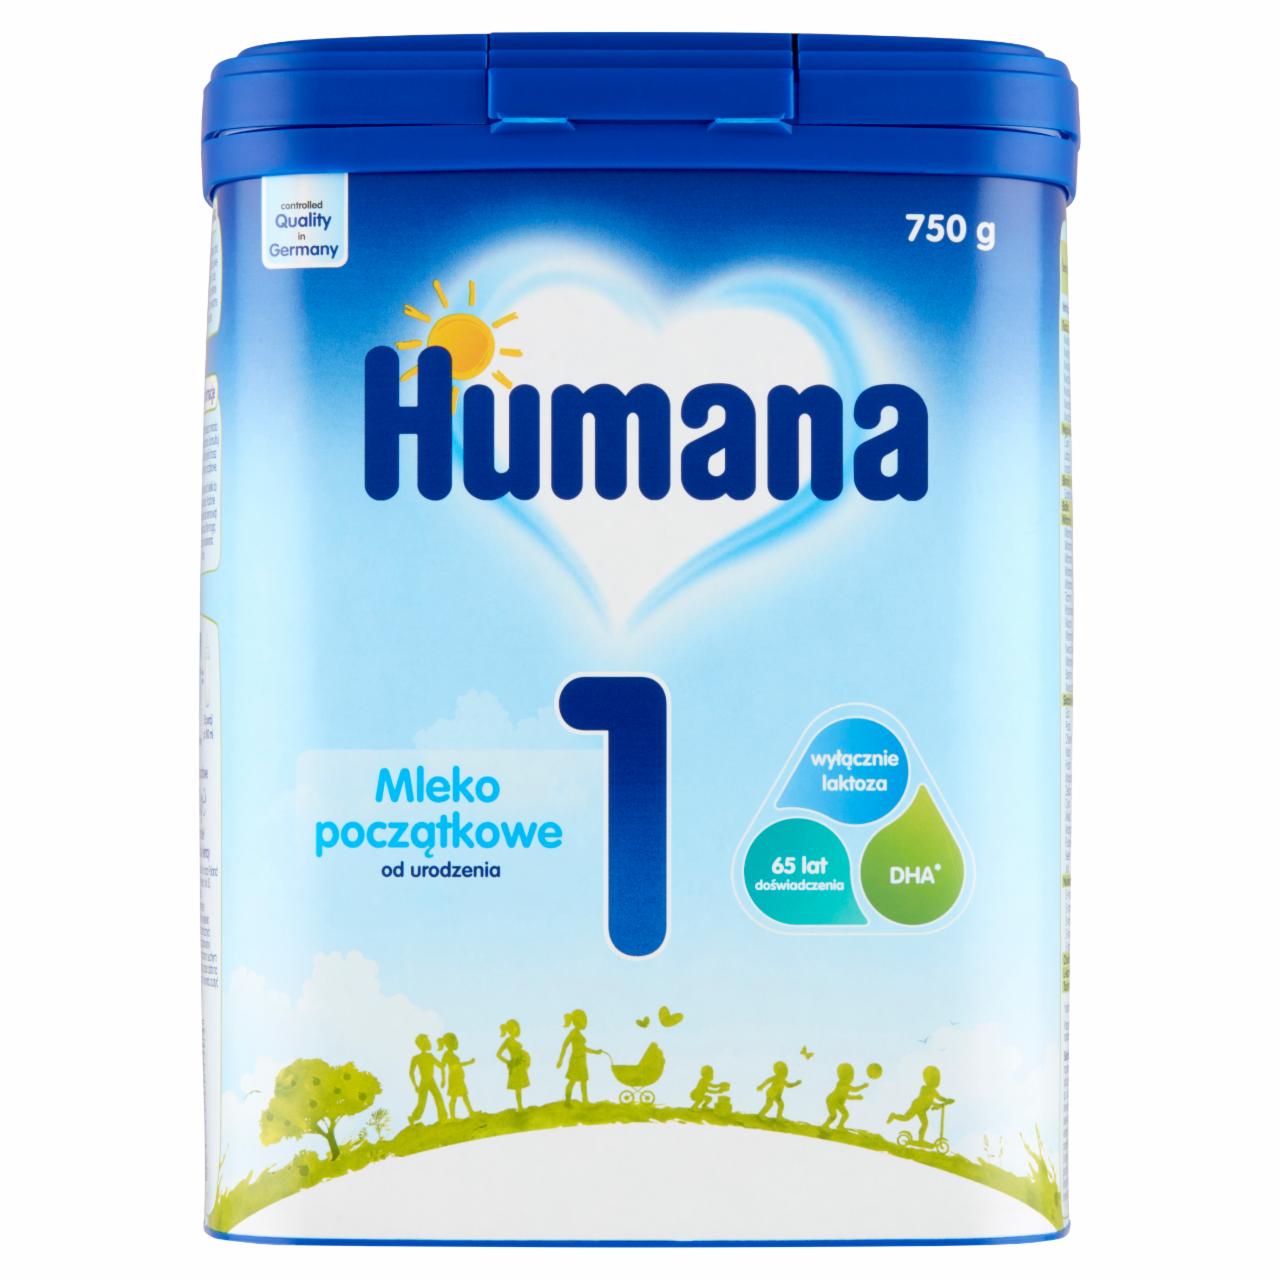 Zdjęcia - Humana 1 Mleko początkowe od urodzenia 750 g